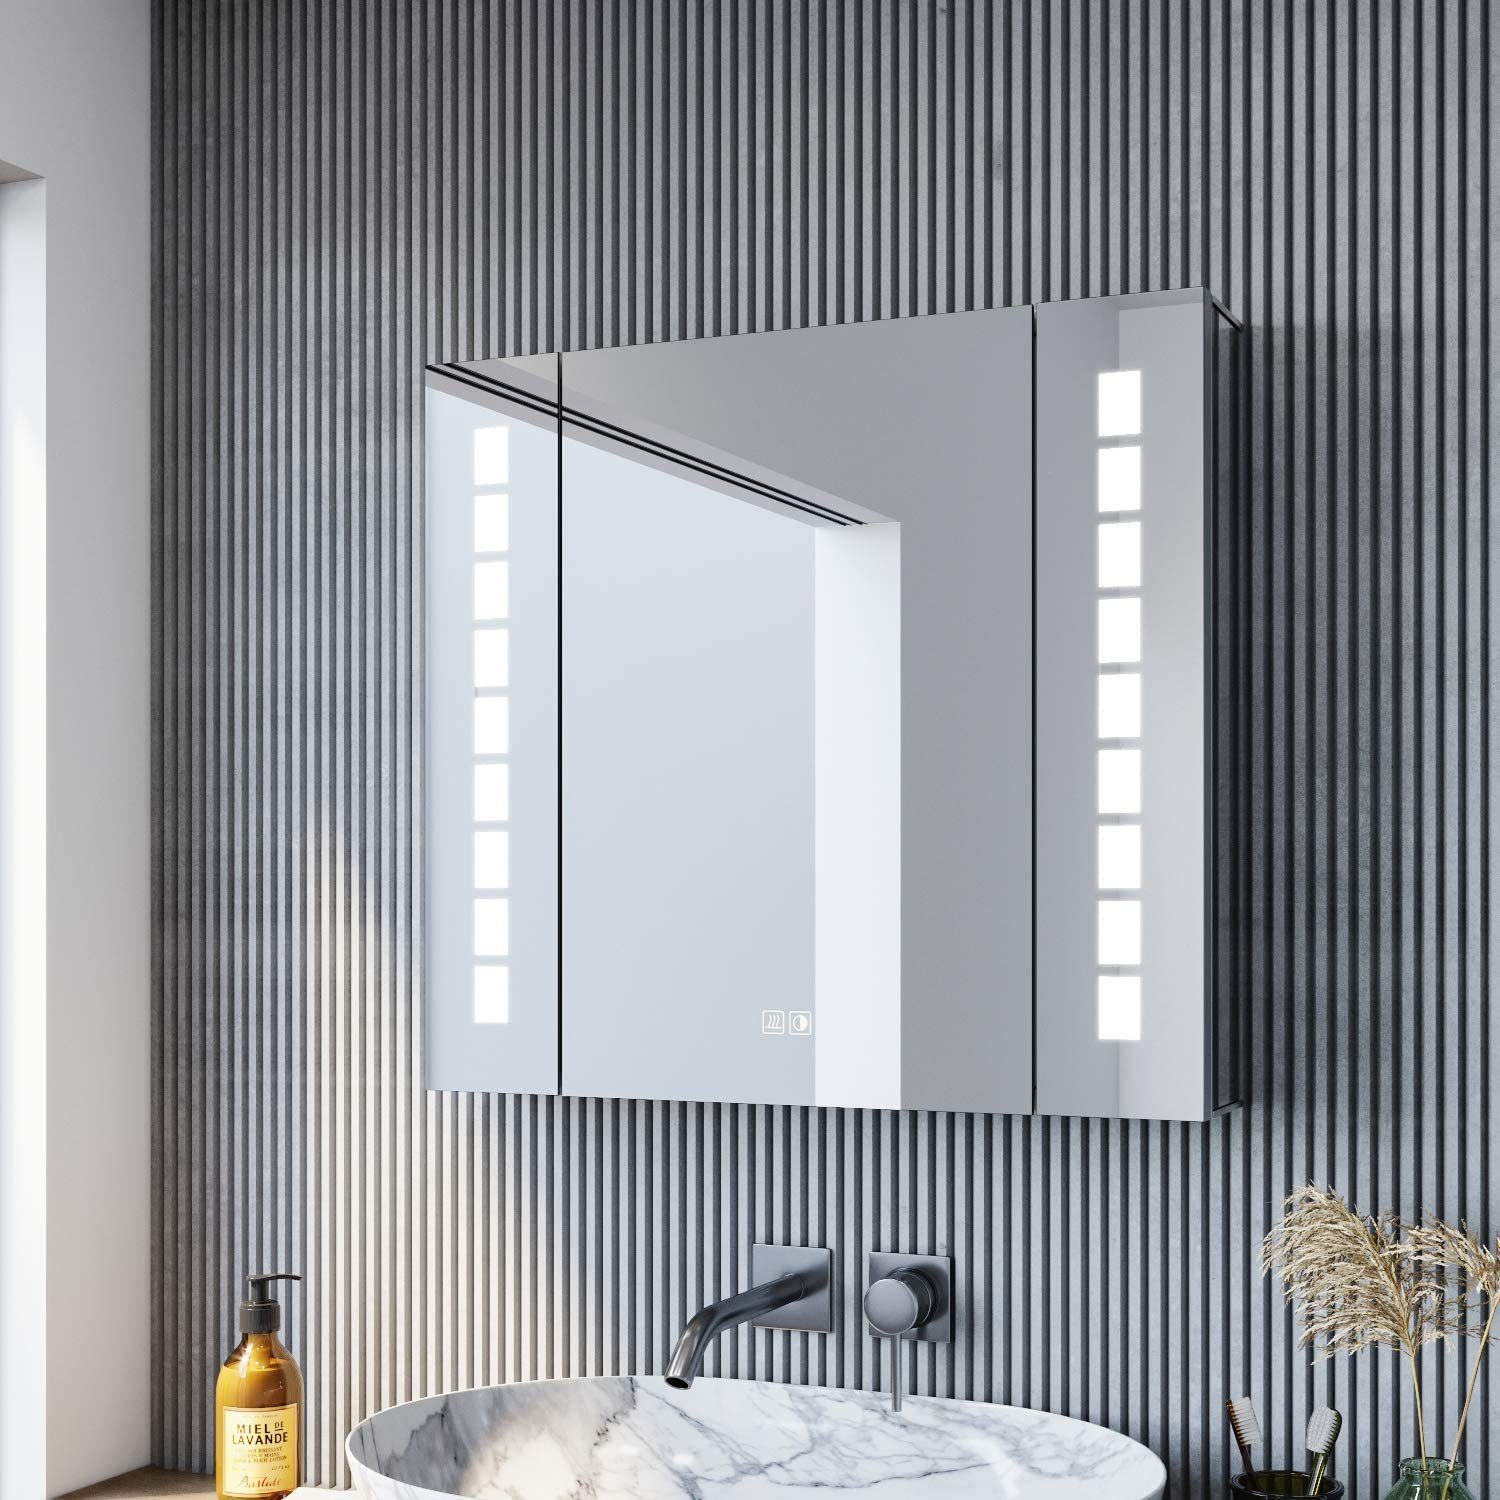 SONNI Spiegelschrank »Spiegelschrank Bad mit LED Beleuchtung 60×65cm  Aluminium« mit Steckdose, Beschlagfrei, Touch online kaufen | OTTO